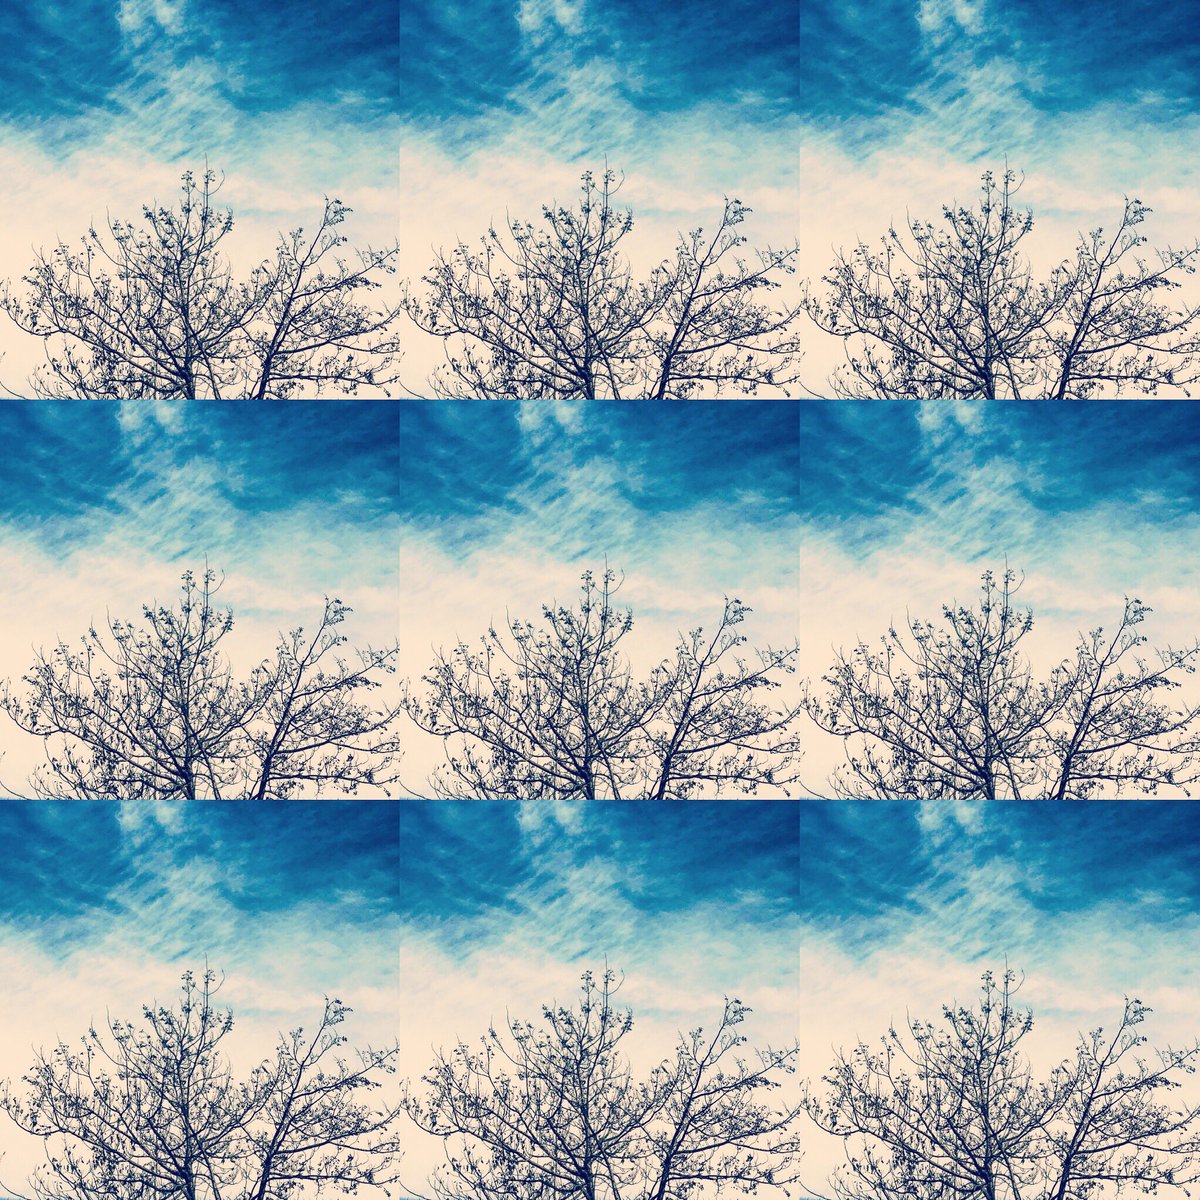 カリメロママ 絵本の挿絵の壁紙 青い絵の具を 塗りつけたような青空 そこにある一本の木も 絵本の挿絵風に 仕上がりました 散歩 壁紙 秋の空 木 絵の具 青色 絵本 挿絵 元気を出そう